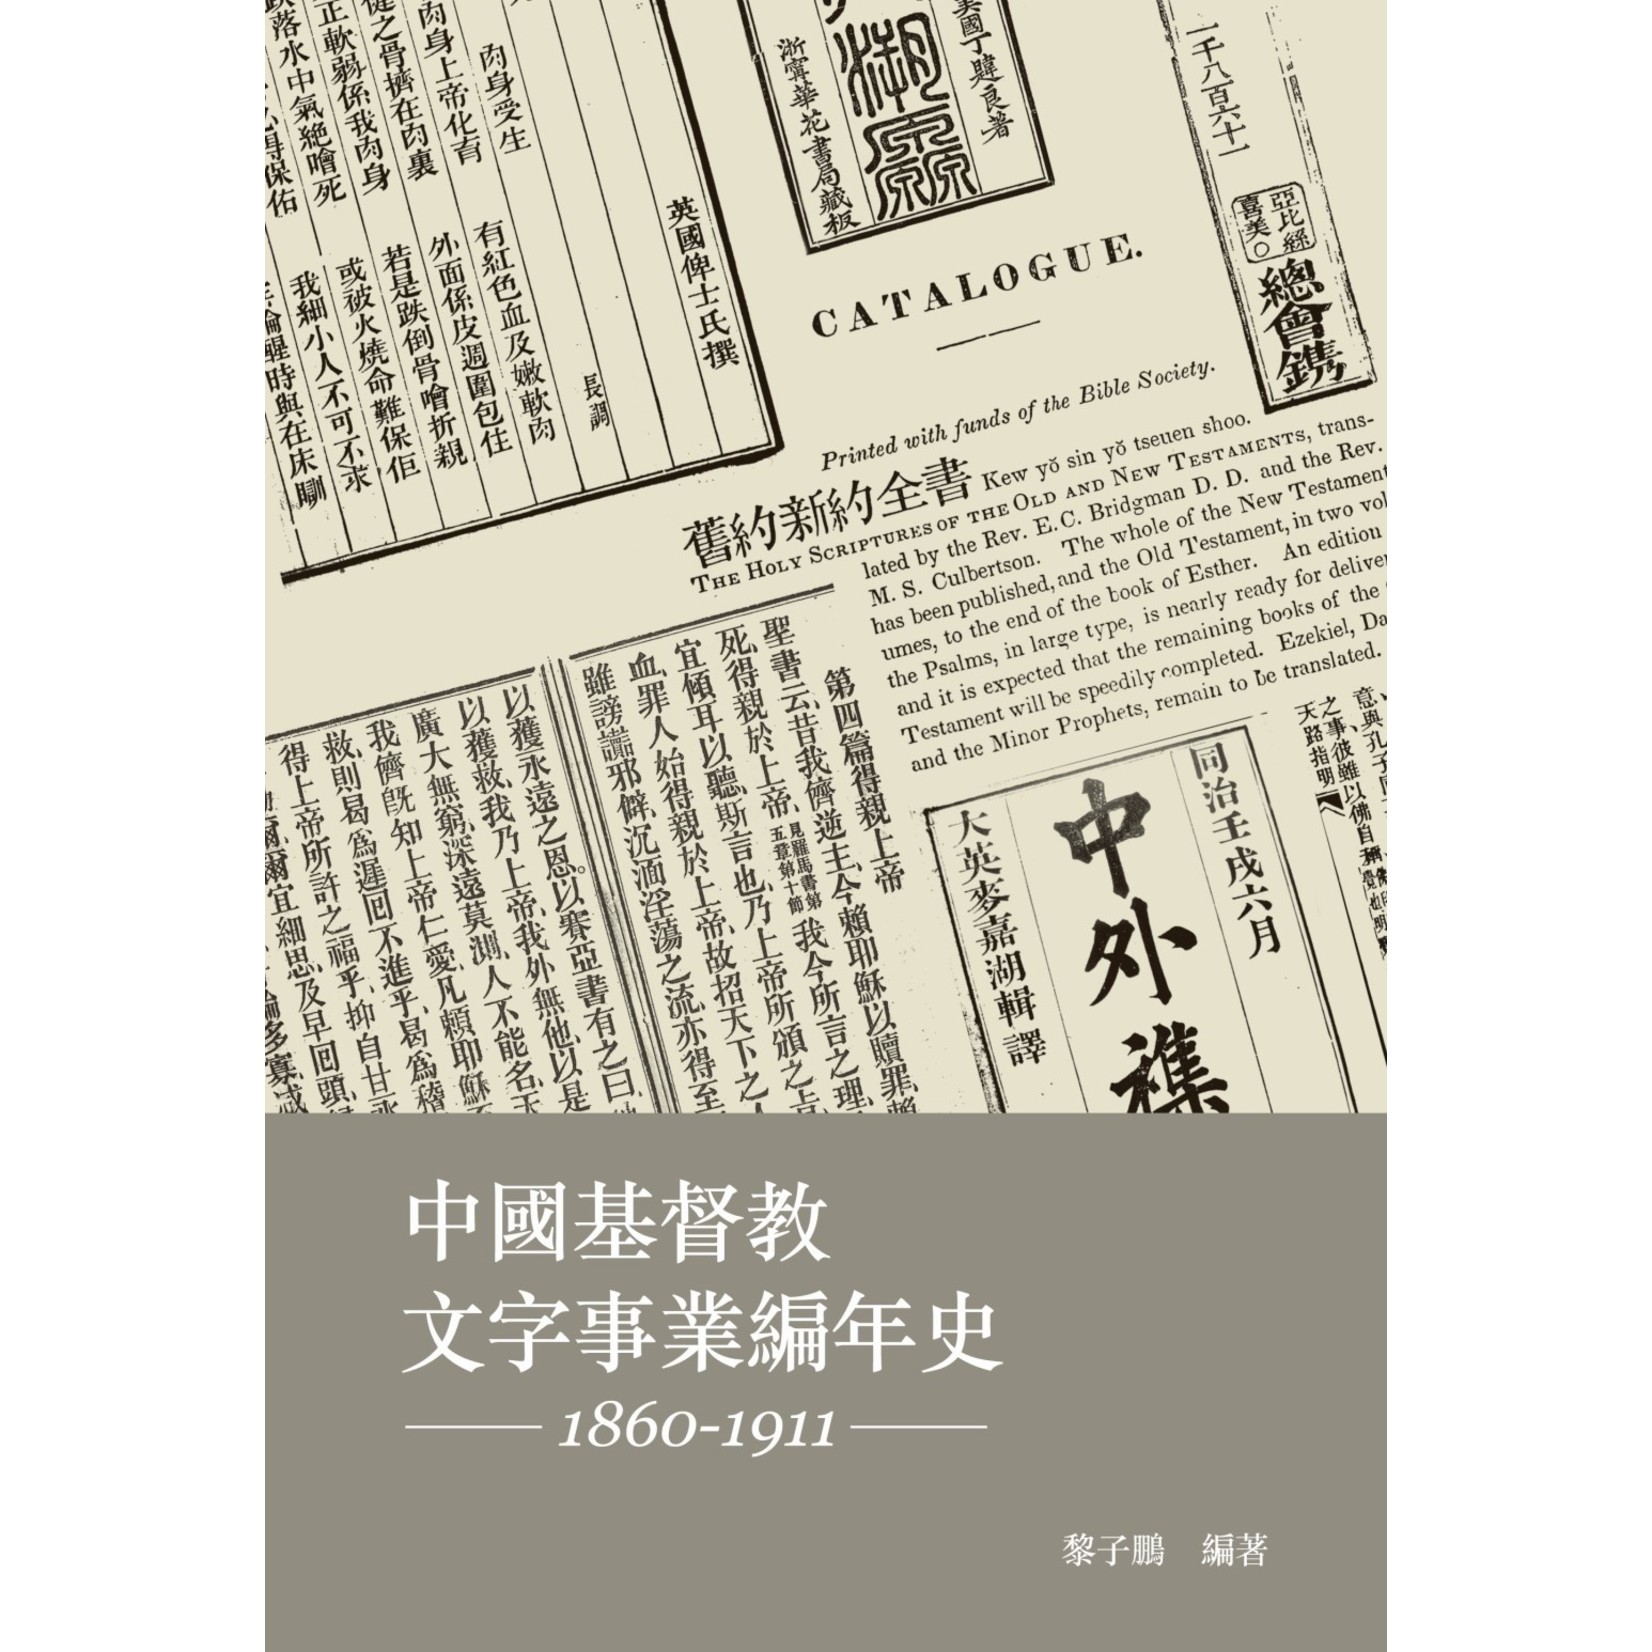 基督教文藝(香港) Chinese Christian Literature Council 中國基督教文字事業編年史 (1860-1911)